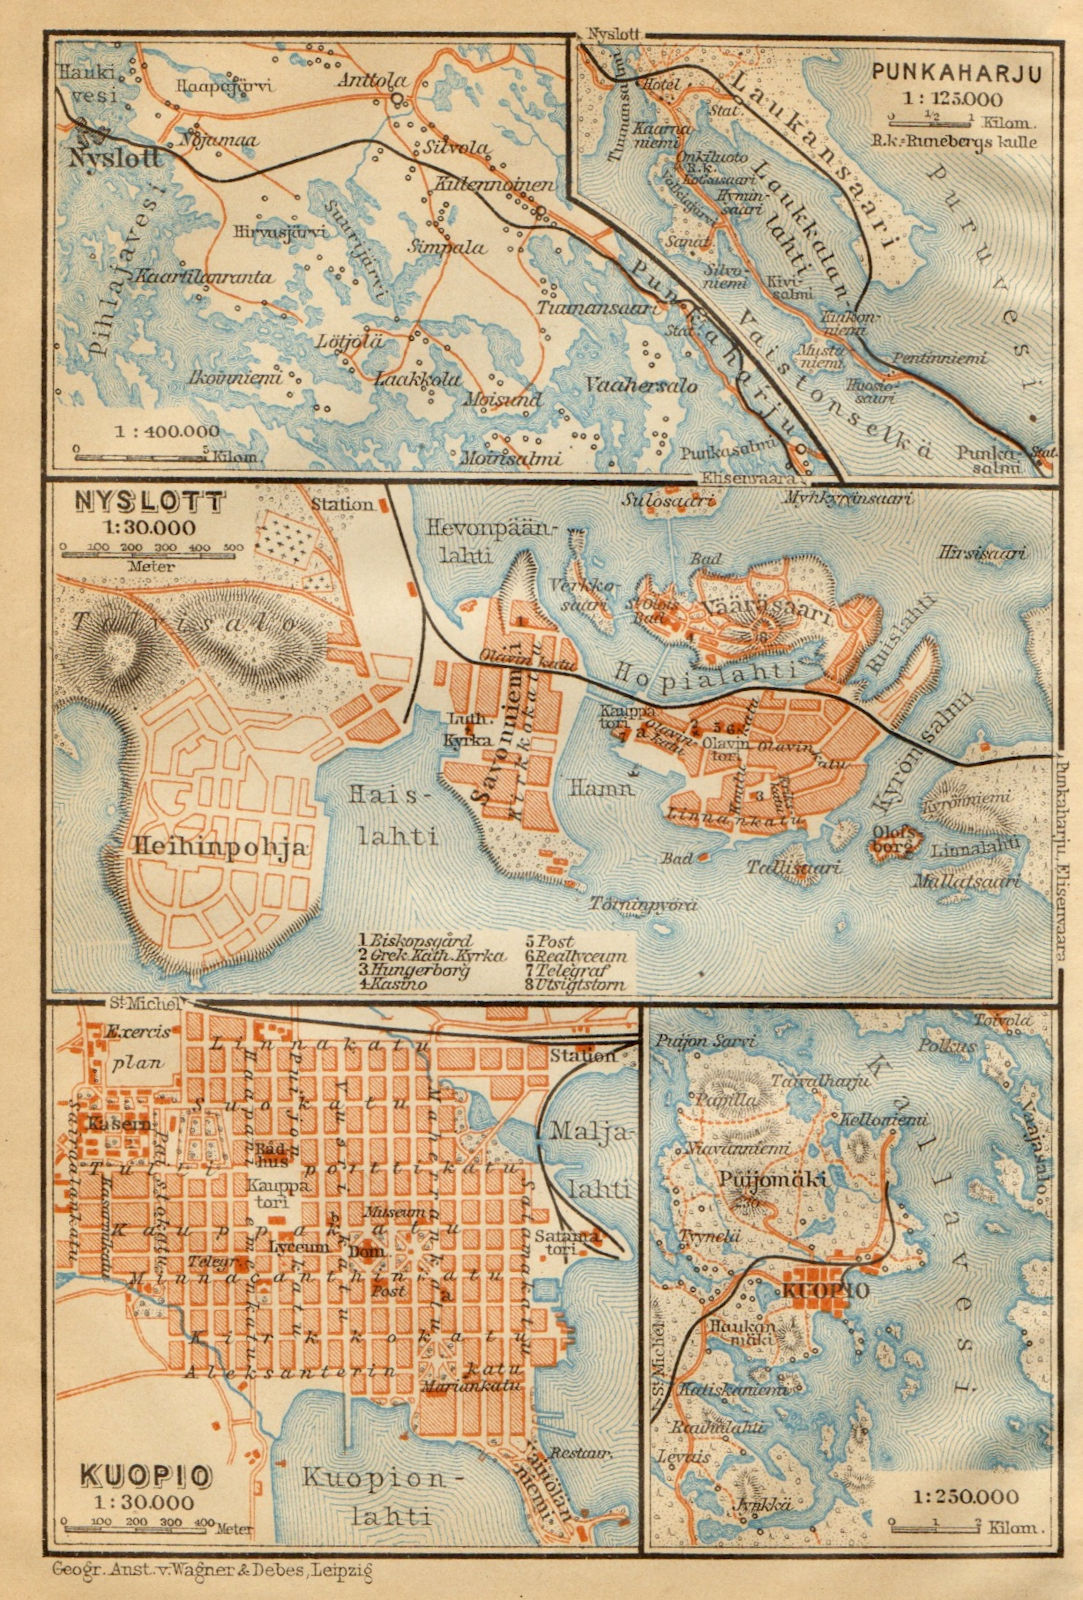 Punkaharju. Savonlinna (Nyslott). Kuopio town/city plan kartta. Finland 1912 map